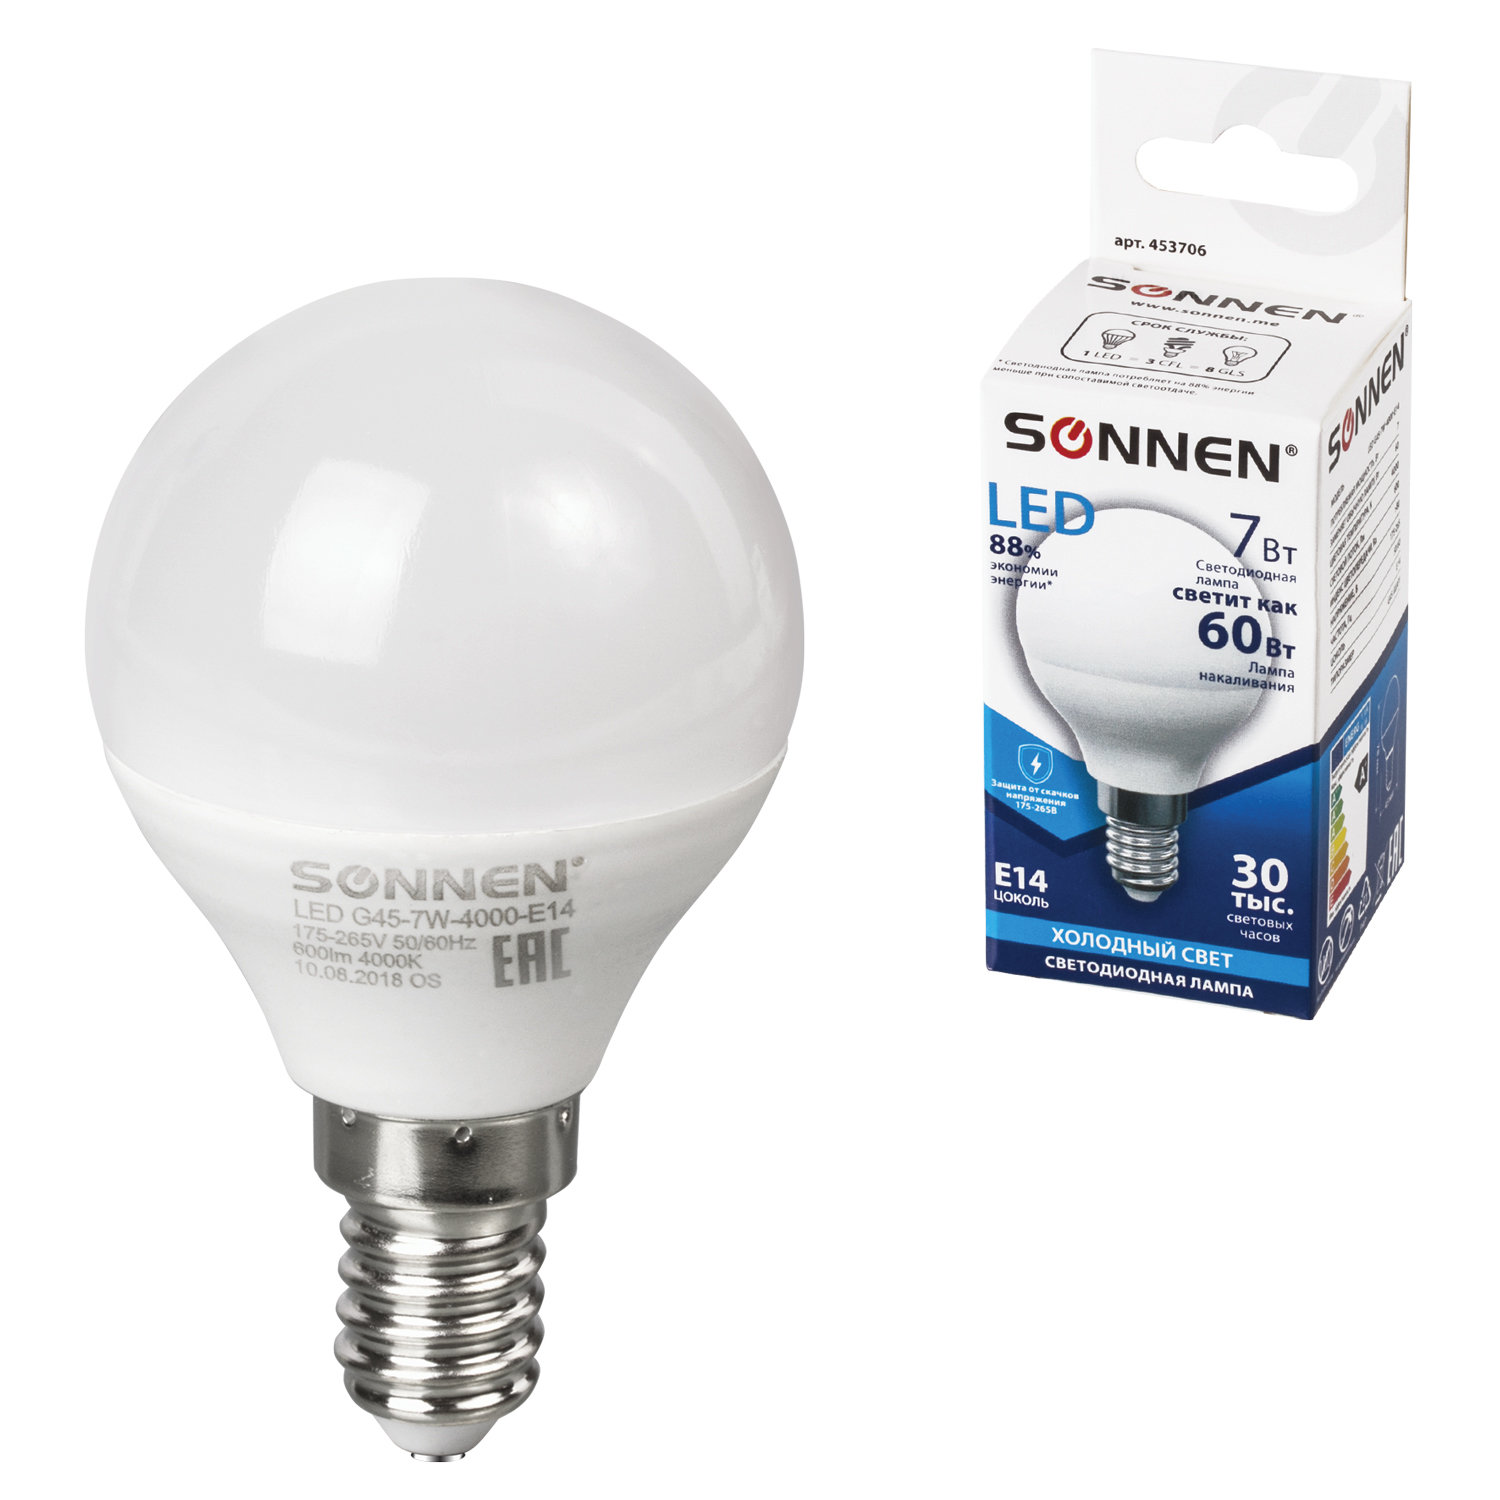 Лампа светодиодная SONNEN, 7 (60) Вт, цоколь Е14, шар, холодный белый свет, 30000 ч, LED G45-7W-4000-E14, 453706 купите по выгодной цене